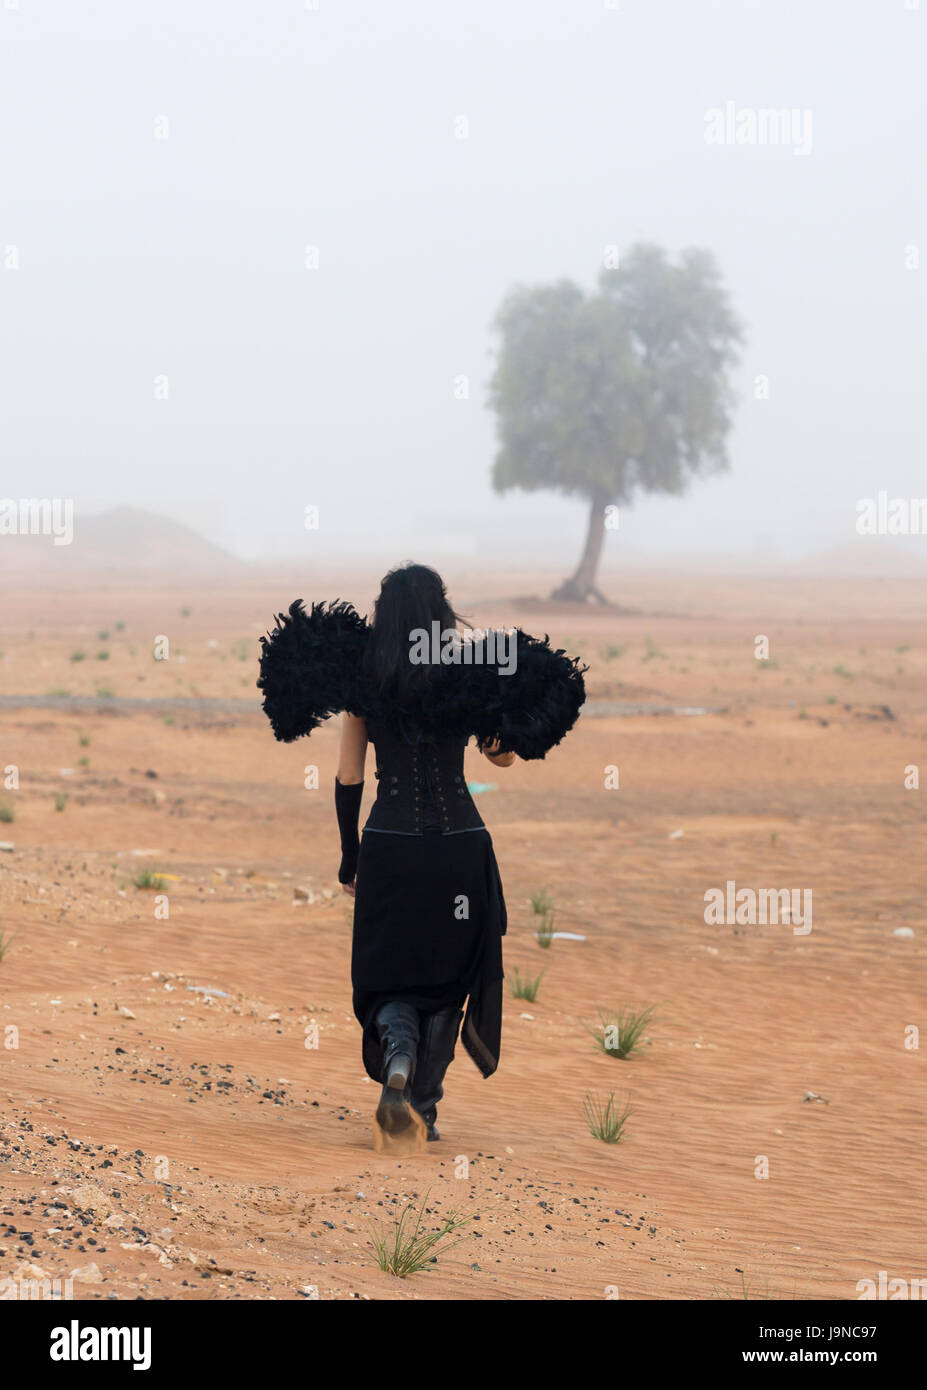 woman wearing blackangel wings walks into a fog Stock Photo